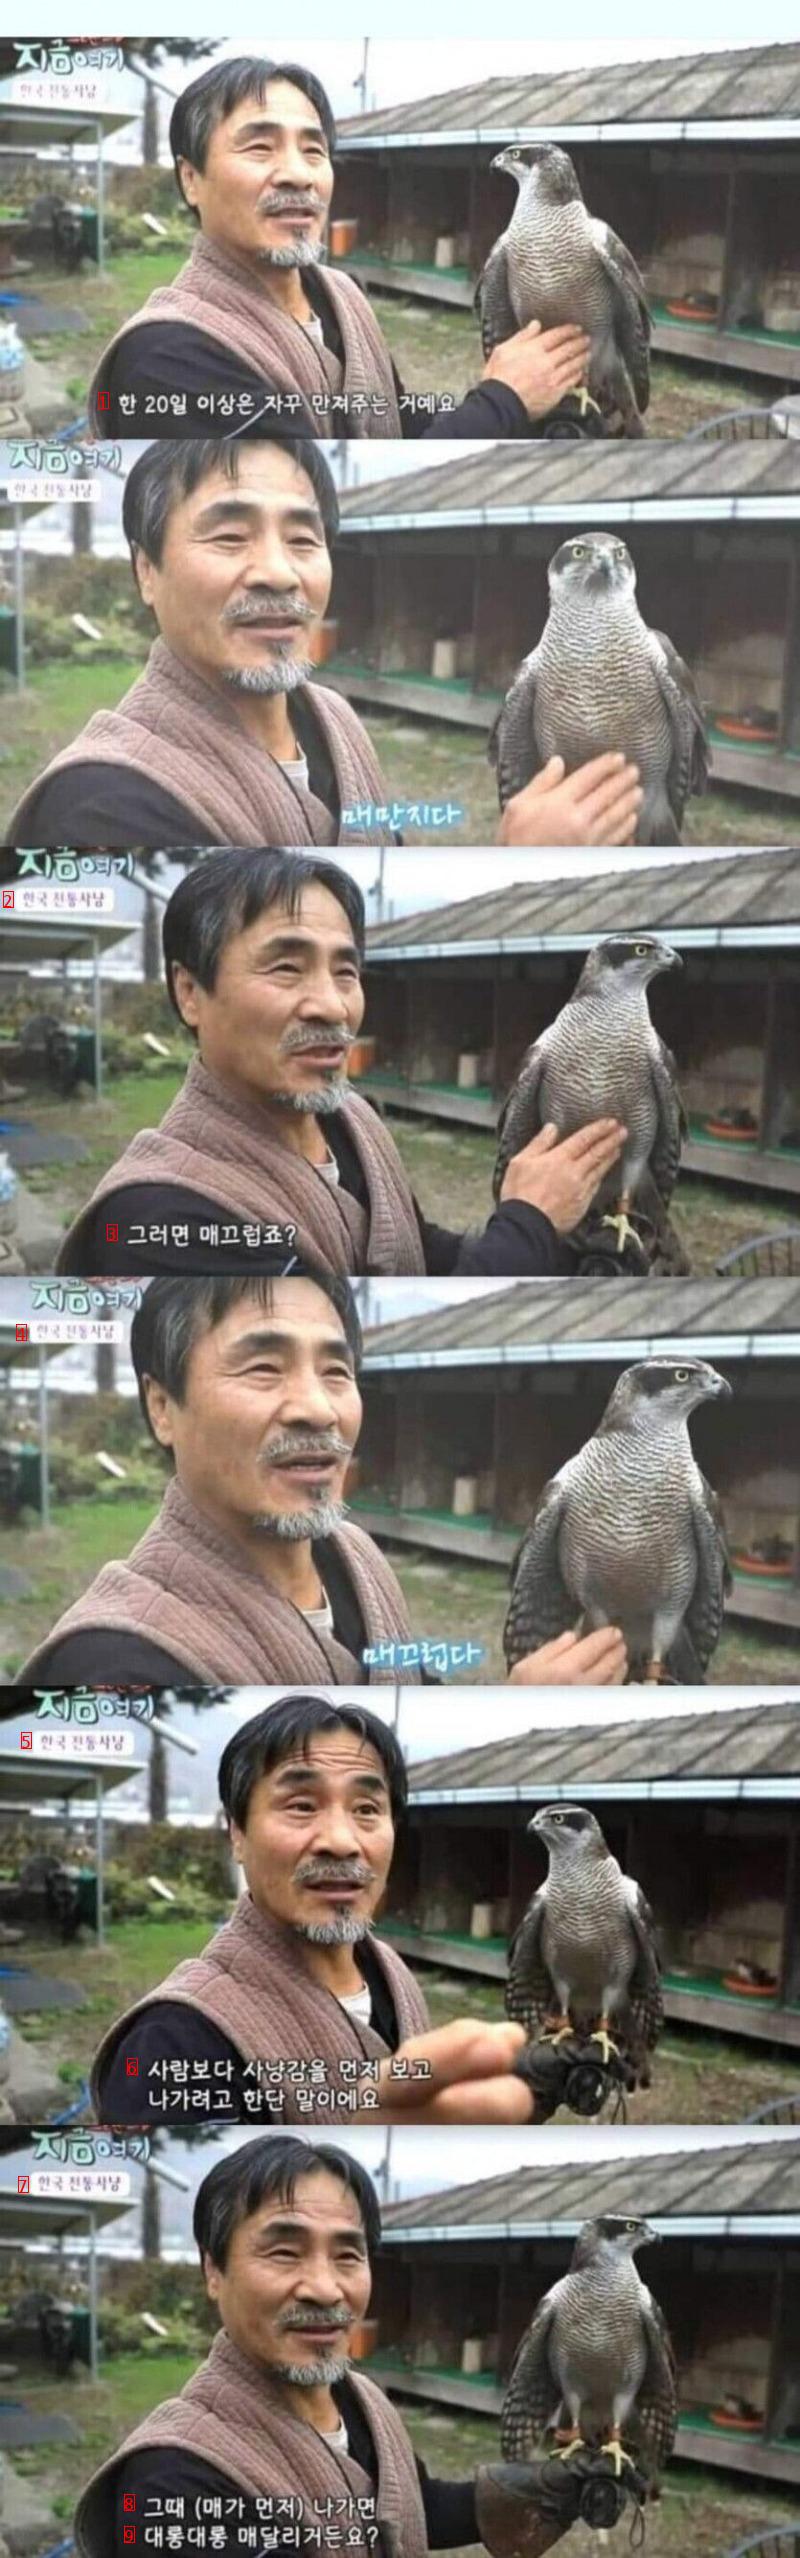 韓国人が好きな鷹の秘密